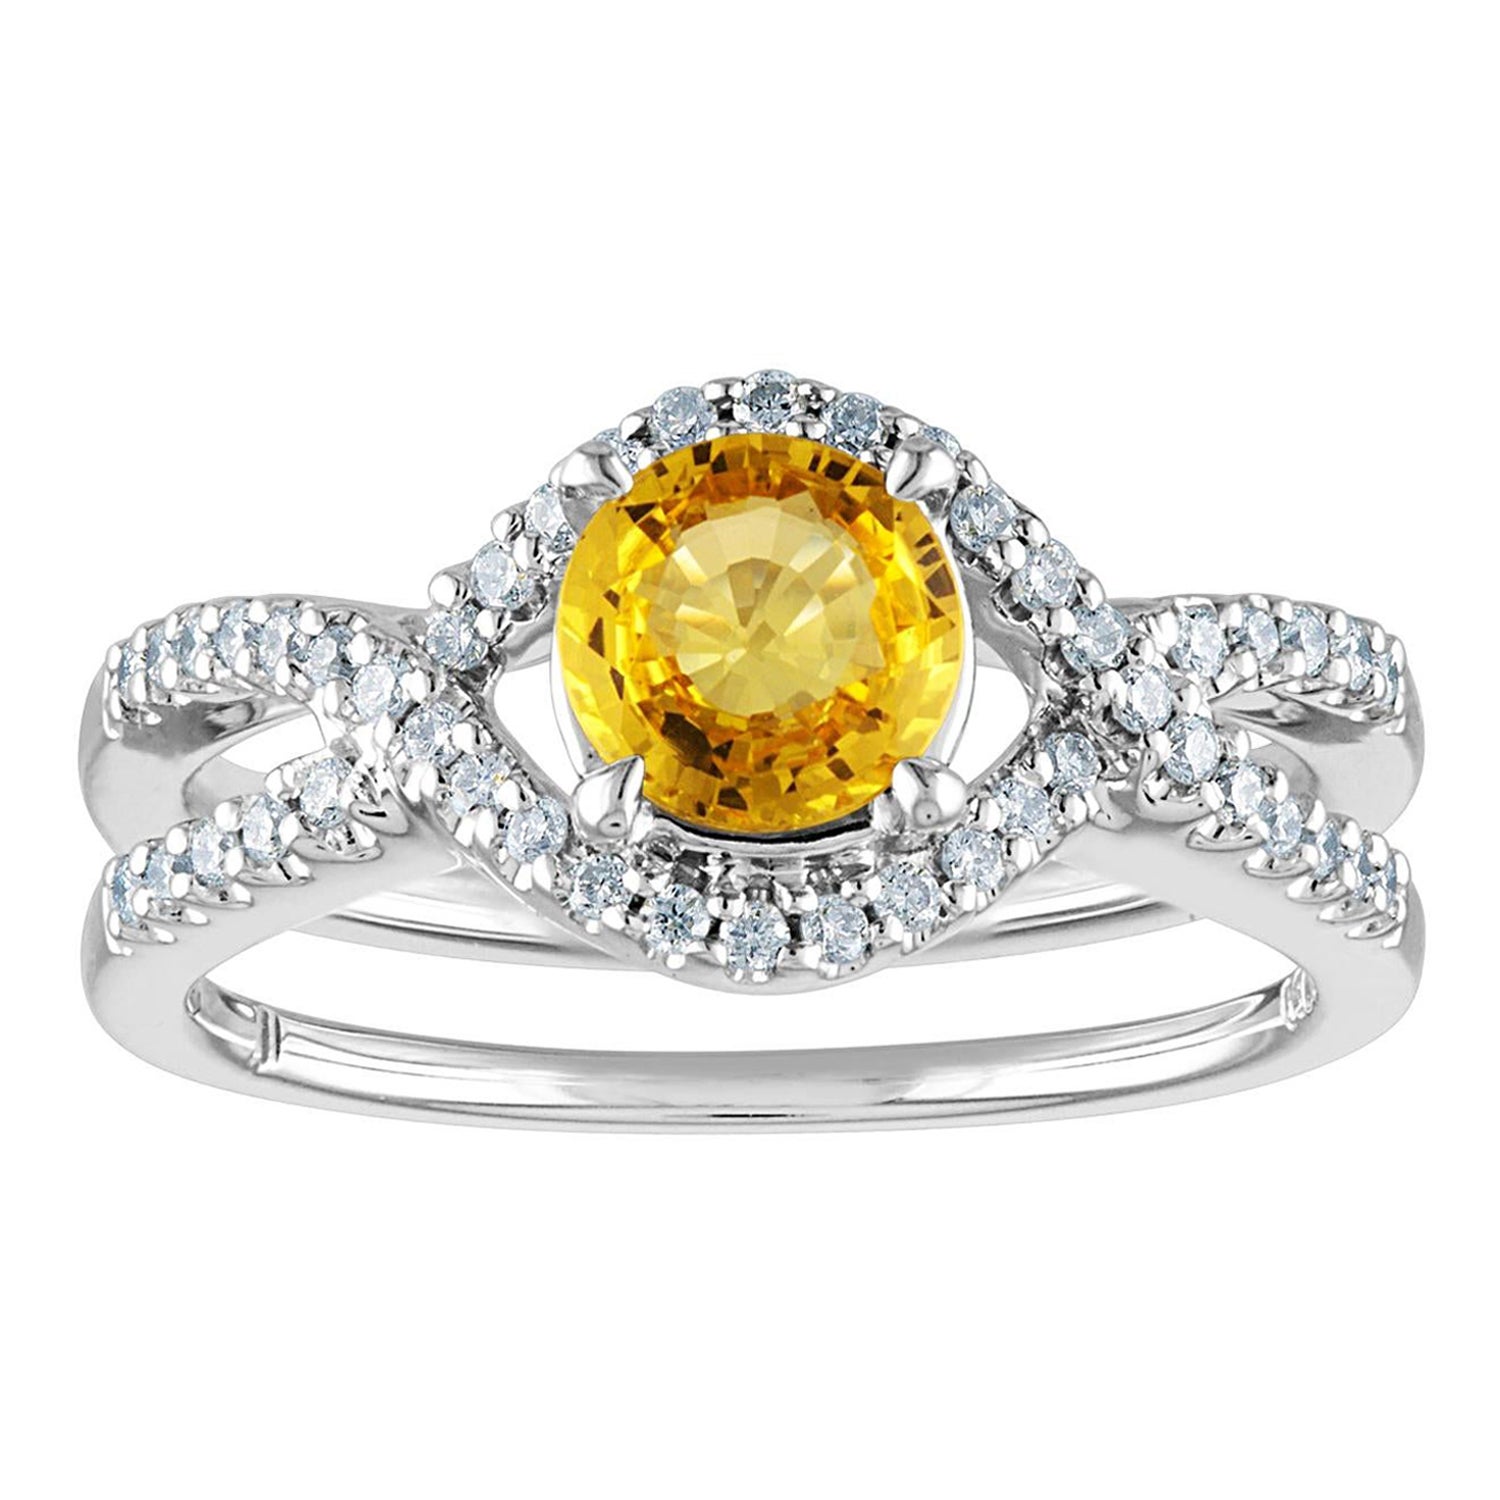 Bague en or avec saphir jaune rond de 0.77 carat et diamant, certifiée AGL